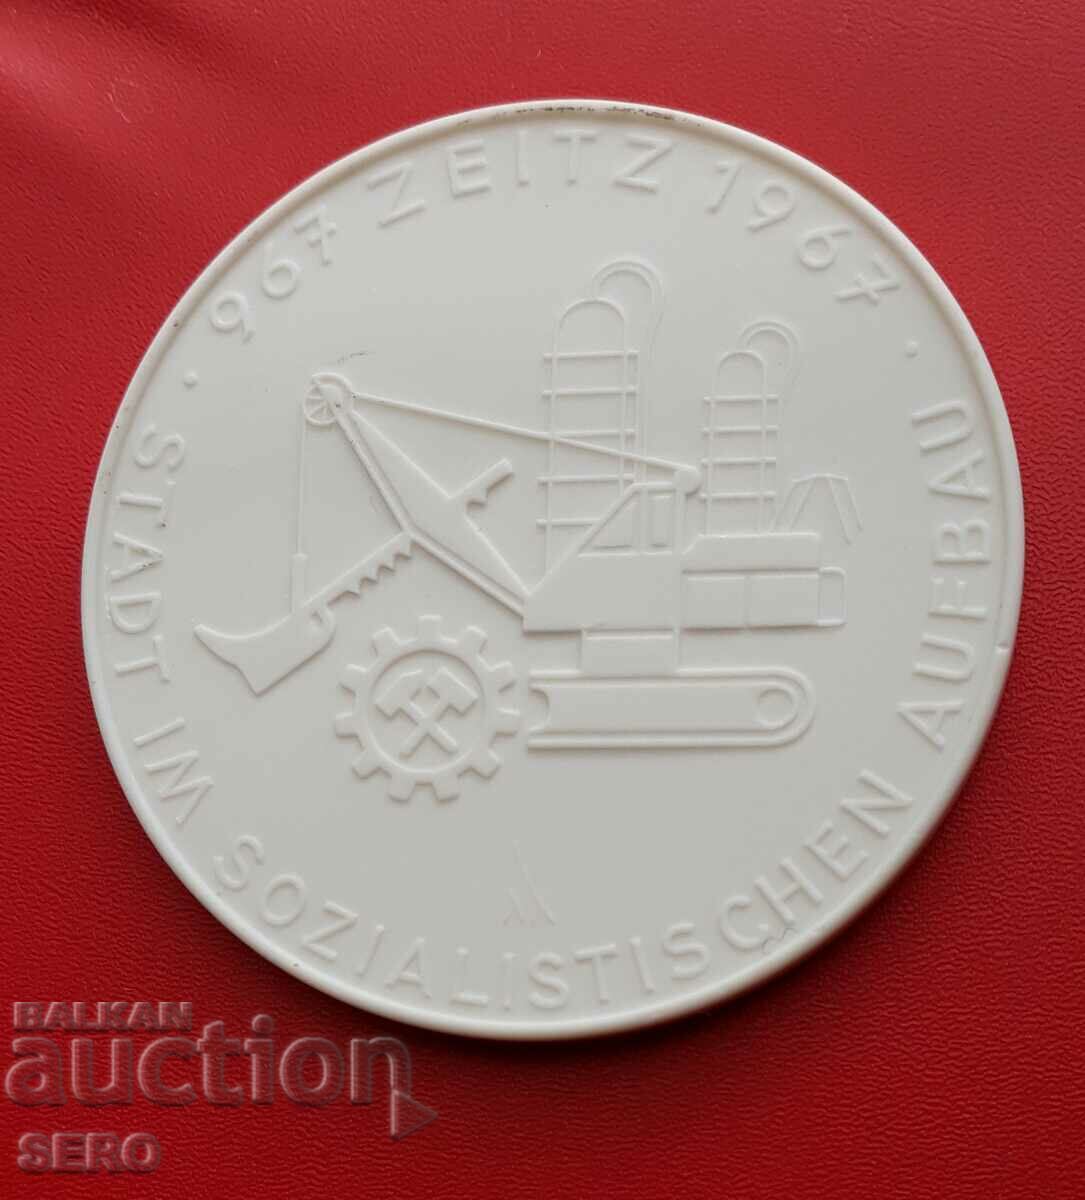 Germany-GDR-large porcelain medal